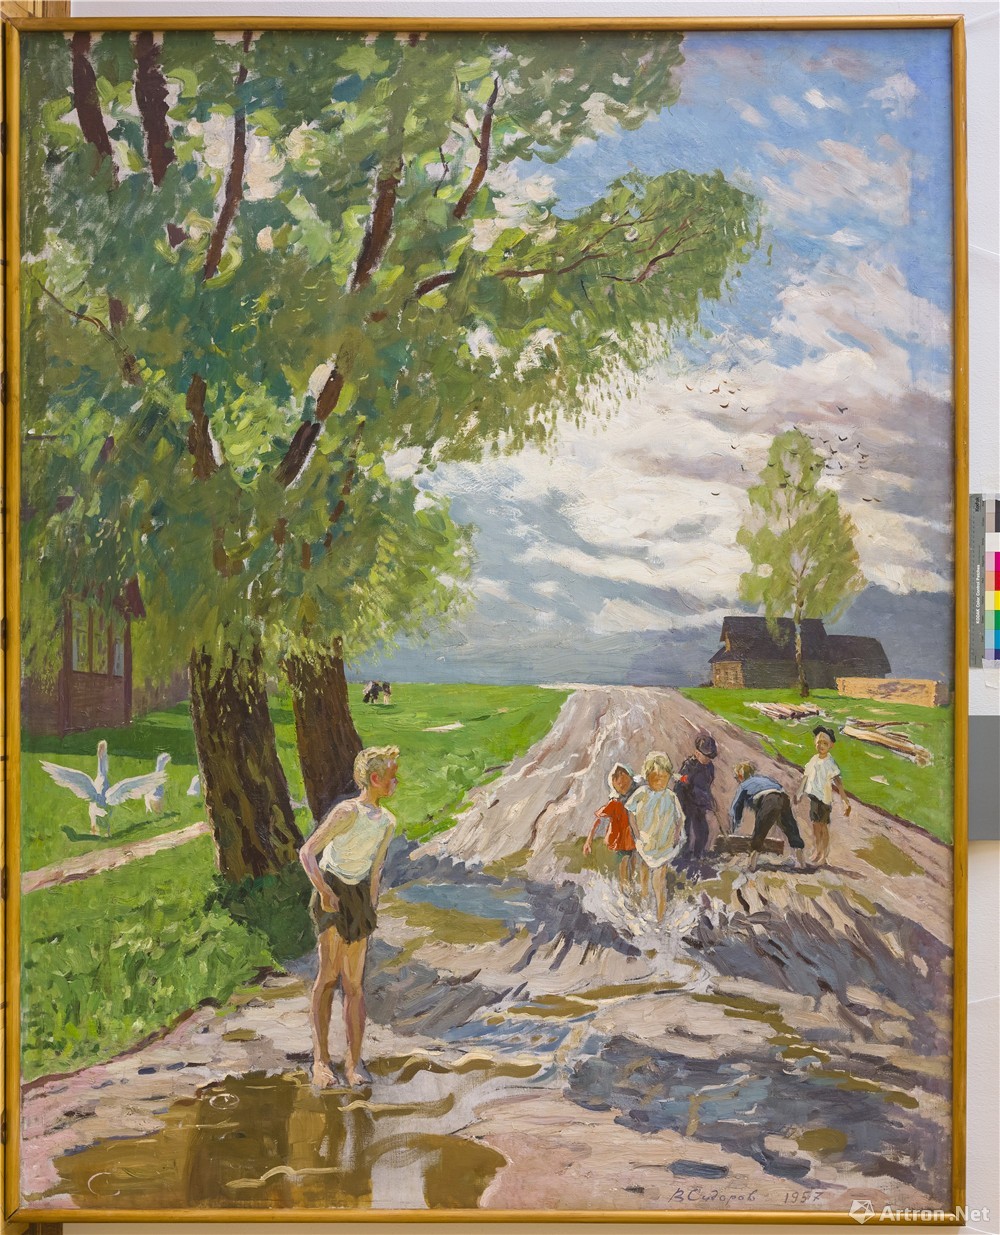 此次展出了西多罗夫先生67幅油画作品,虽然先生未亲临现场,但他色彩